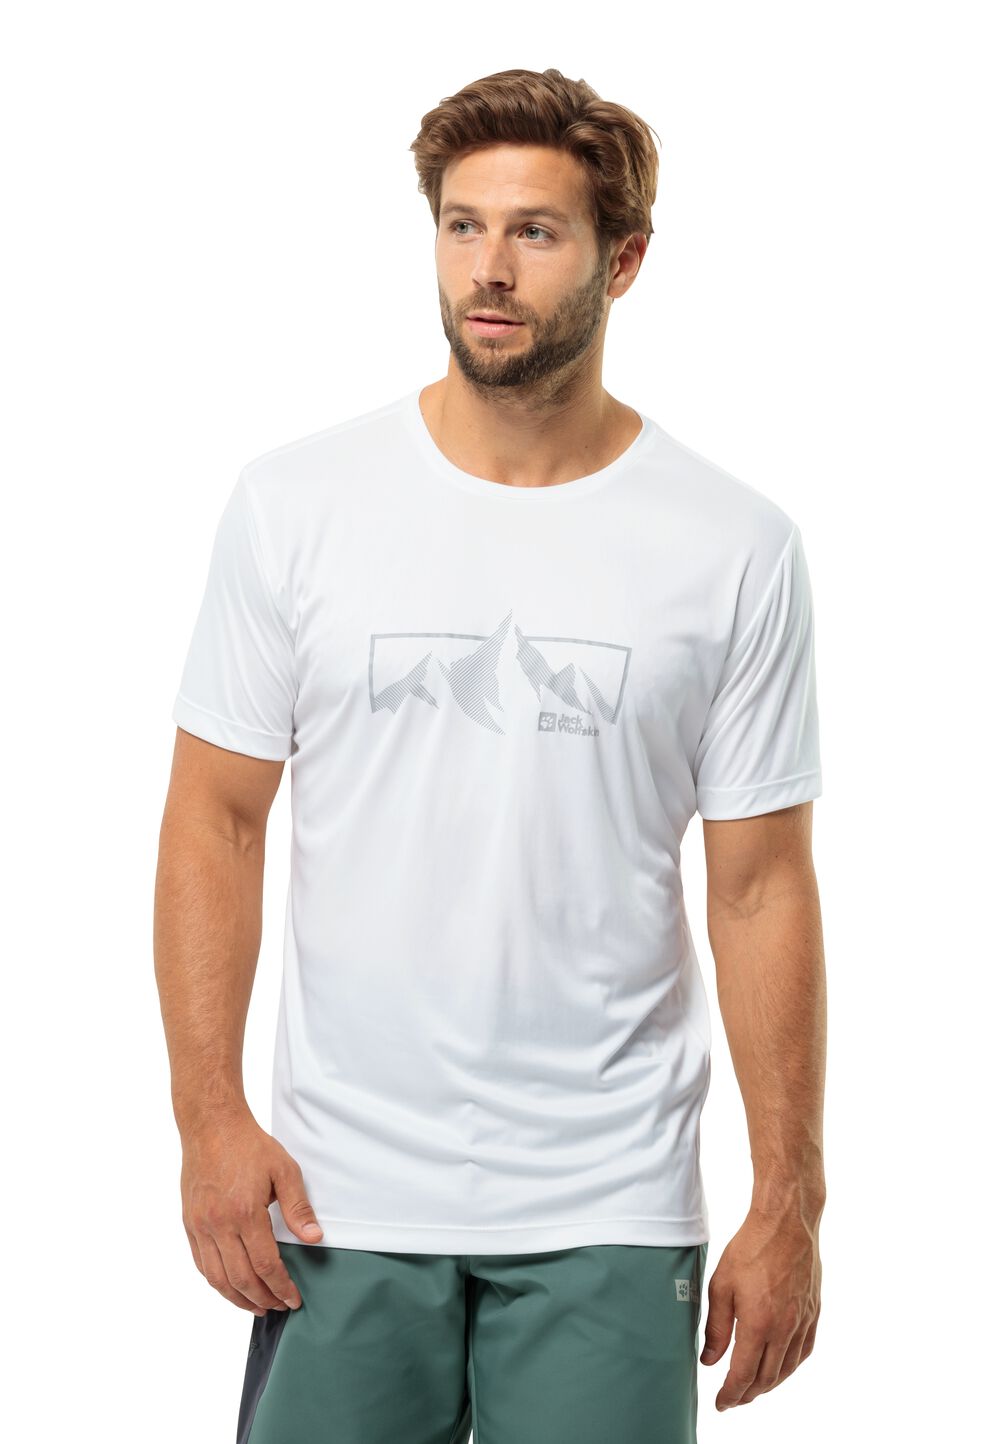 Jack Wolfskin Peak Graphic T-Shirt Men Functioneel shirt Heren 3XL wit stark white